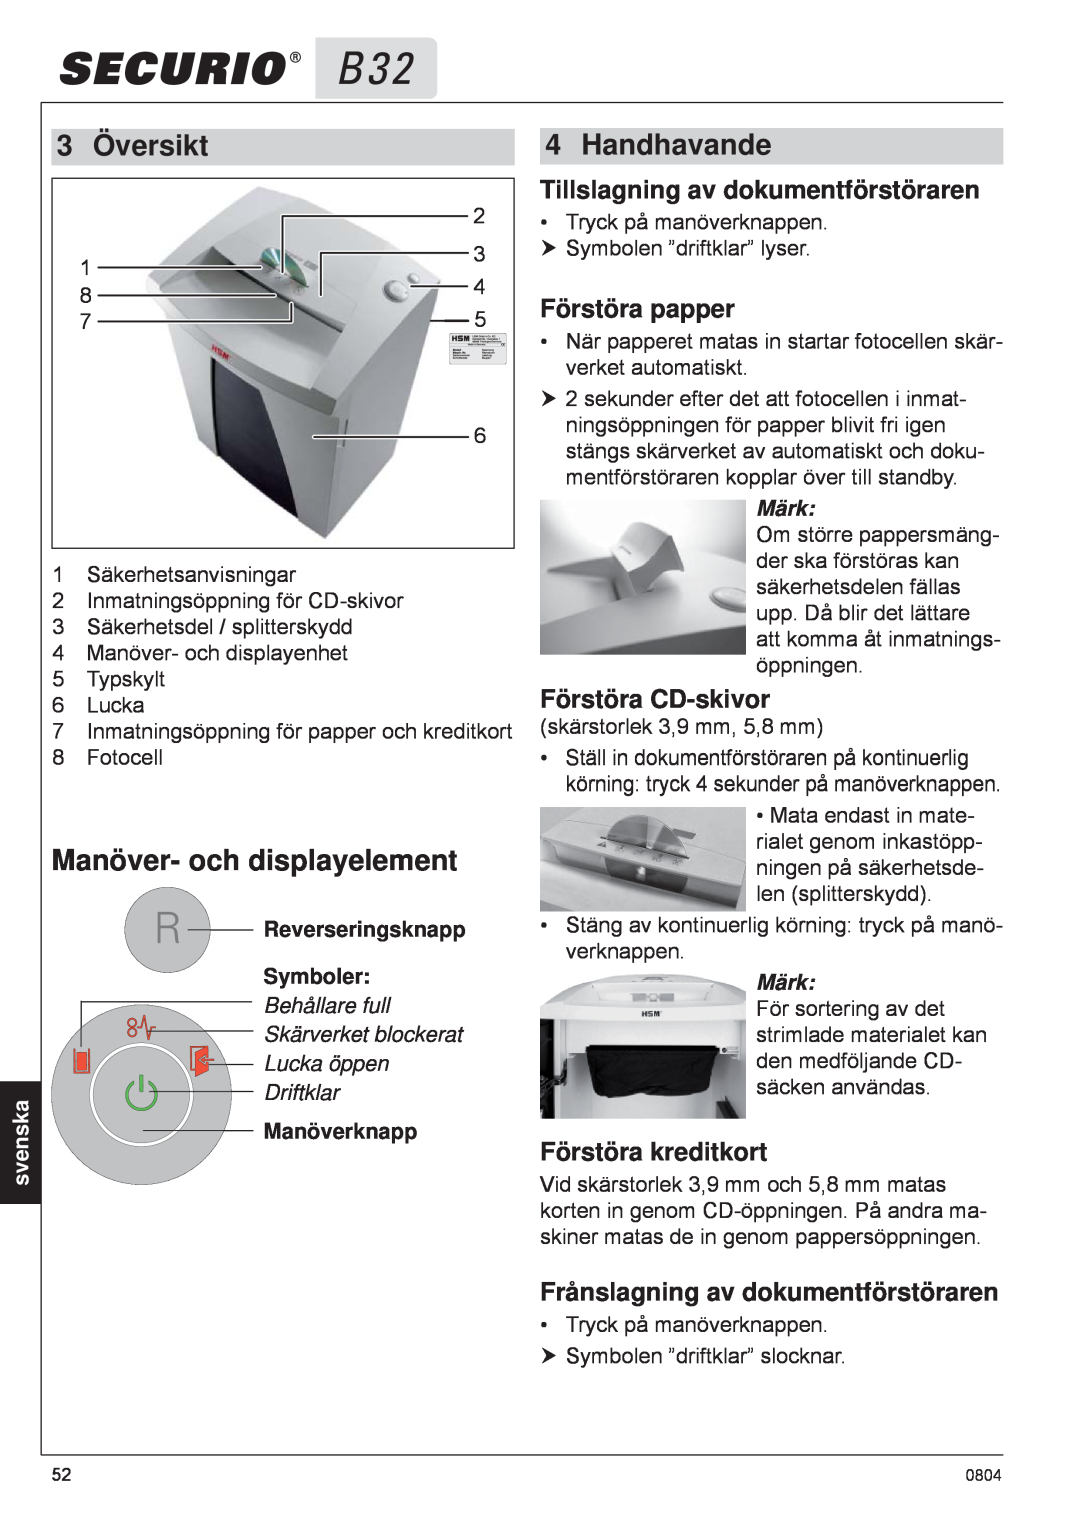 HSM B32 Översikt, Manöver- och displayelement, Handhavande, Tillslagning av dokumentförstöraren, Förstöra papper, svenska 